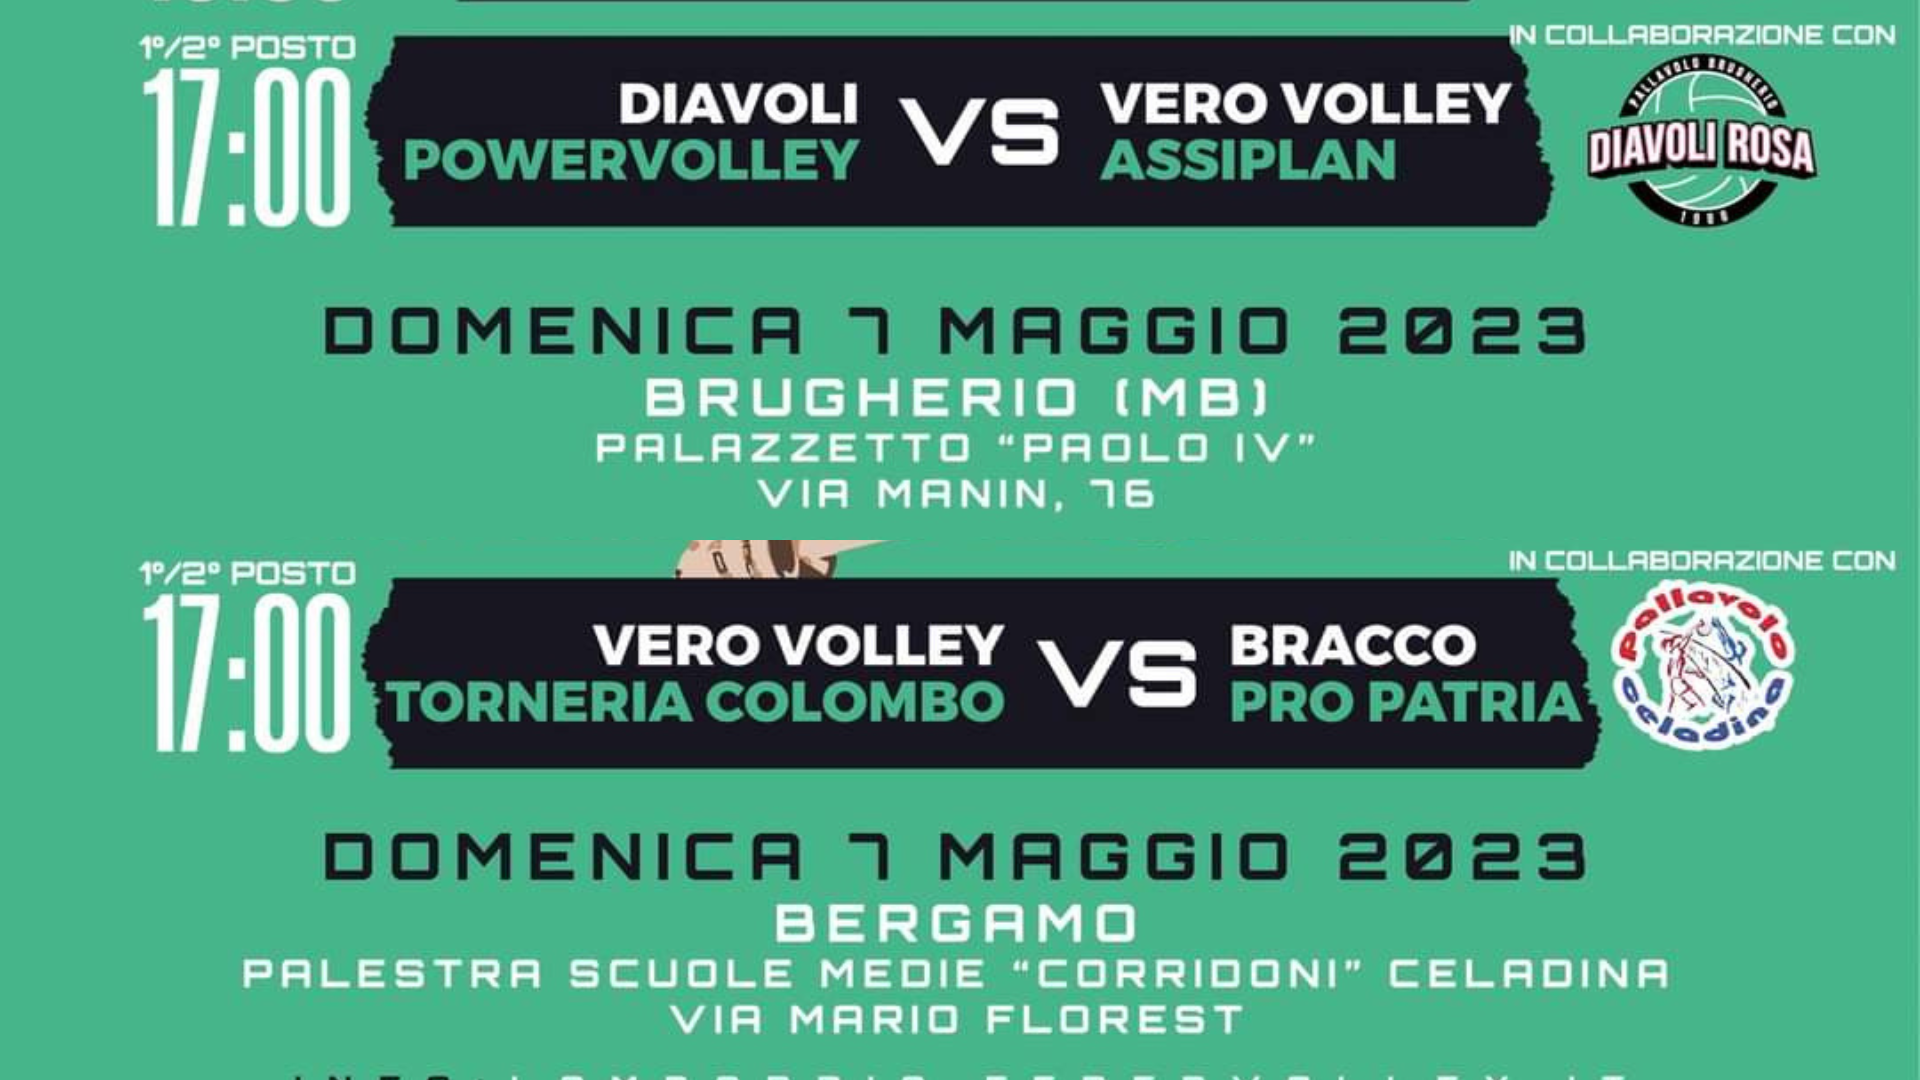 Vero Volley (96)